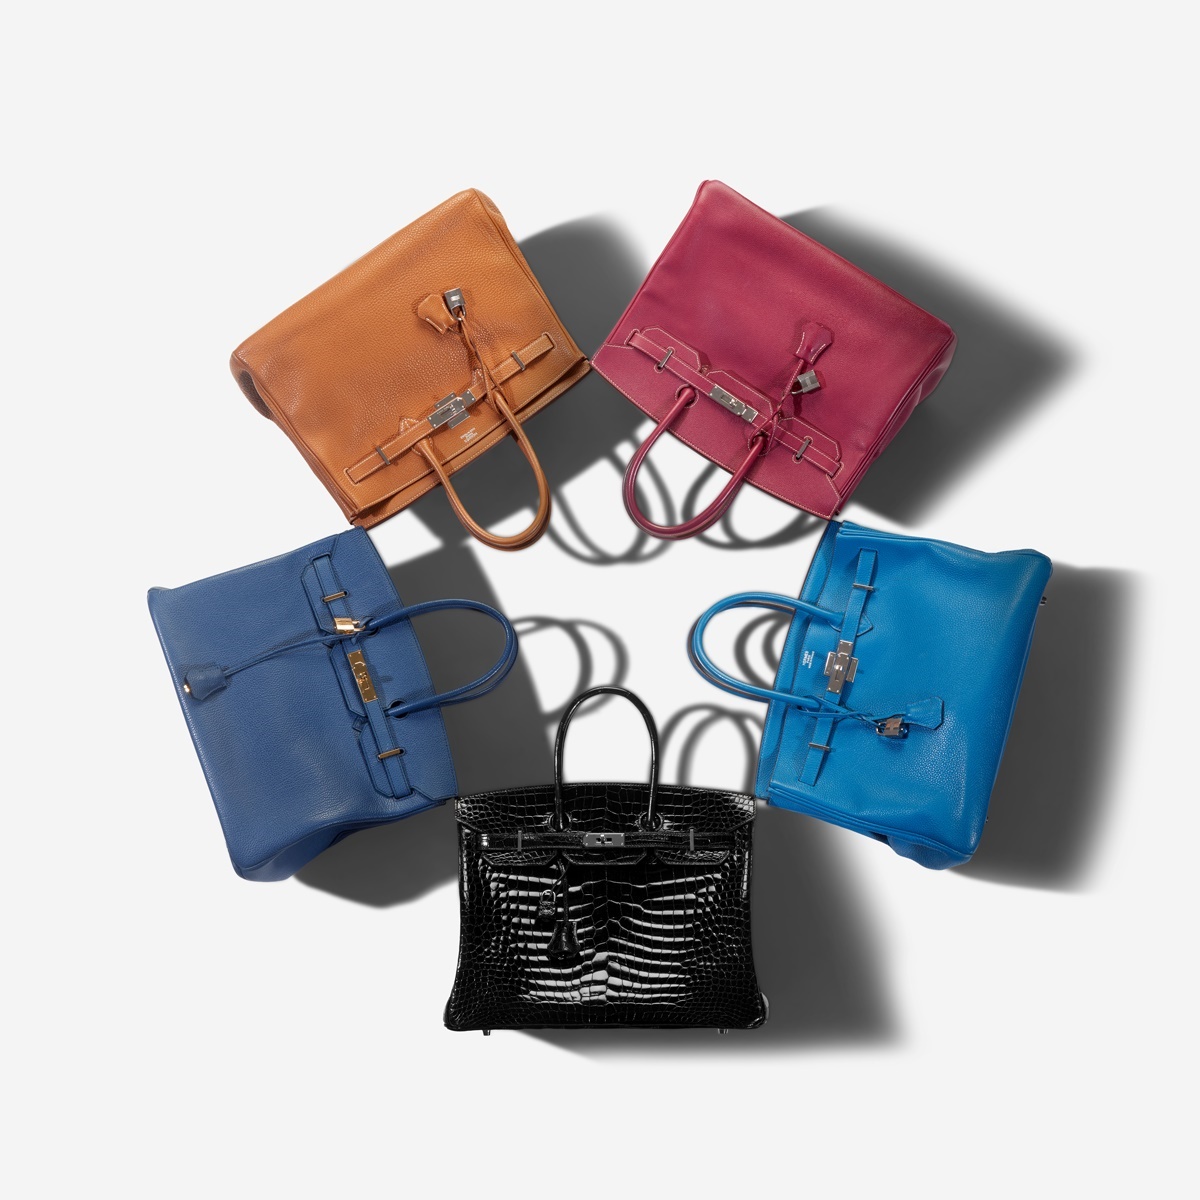 Túi xách Birkin là dòng sản phẩm đình đám của thương hiệu Hermès